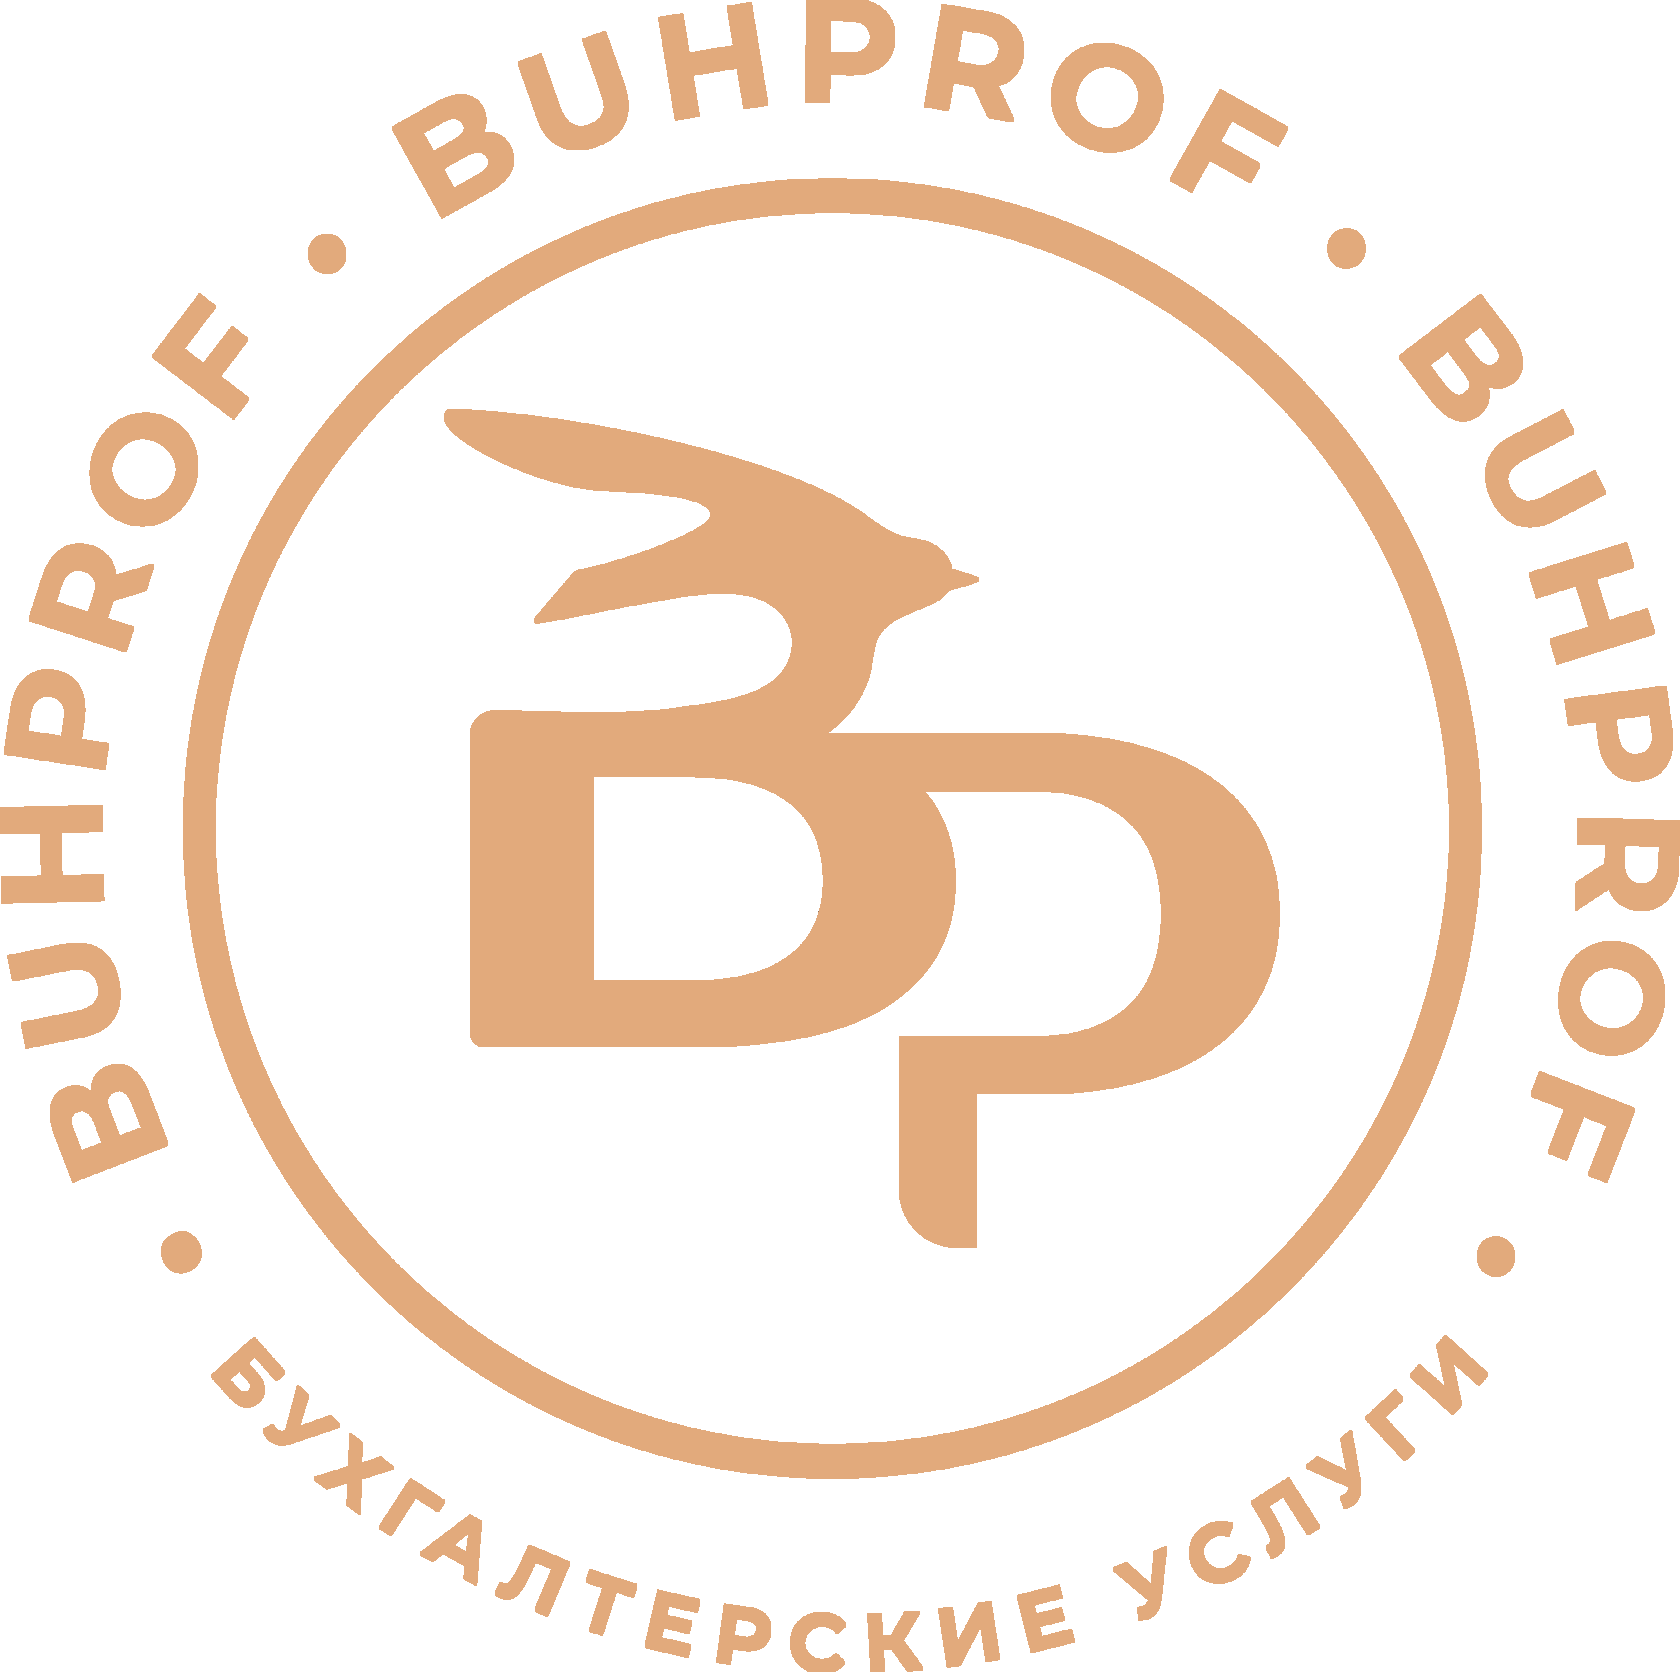 buhprof.biz